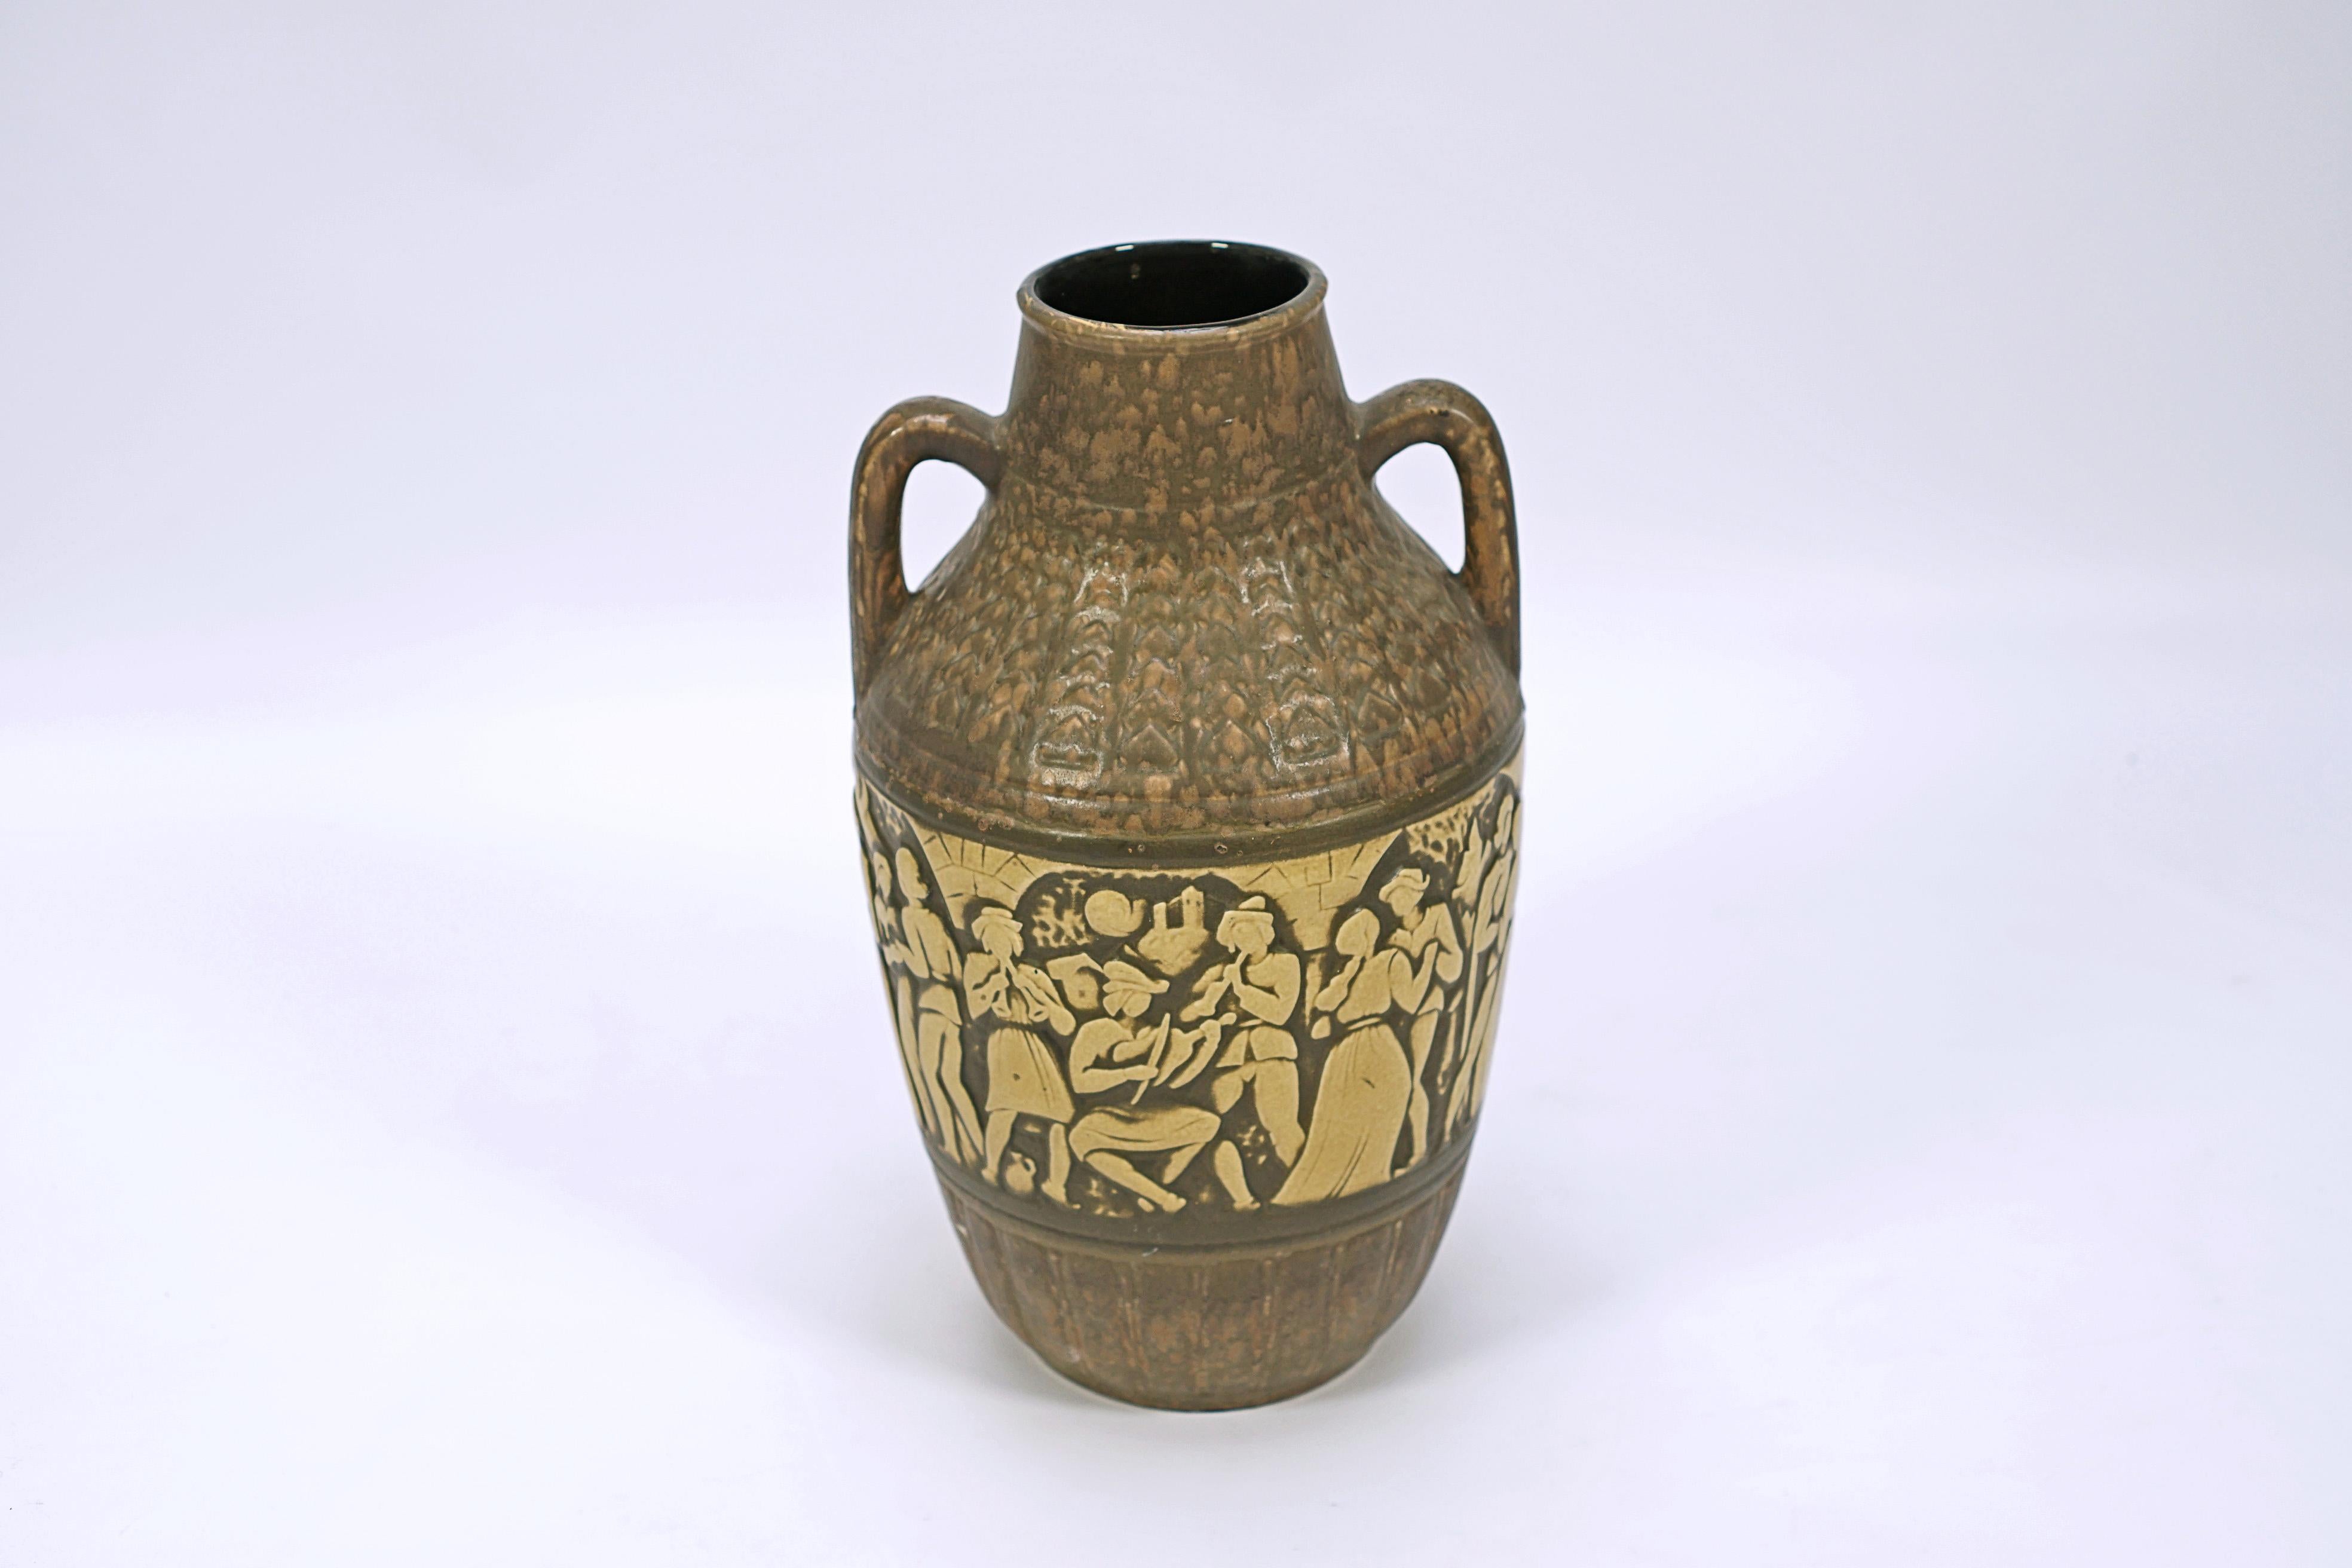 Keramische Vase in Brauntönen mit Henkeln, mit einem Zentrum von Zeichen in einer deutschen Partei der Zeit.

Gezeichnet W. Deutschland, Nr. 224157. (Nachkriegs-Westdeutschland)